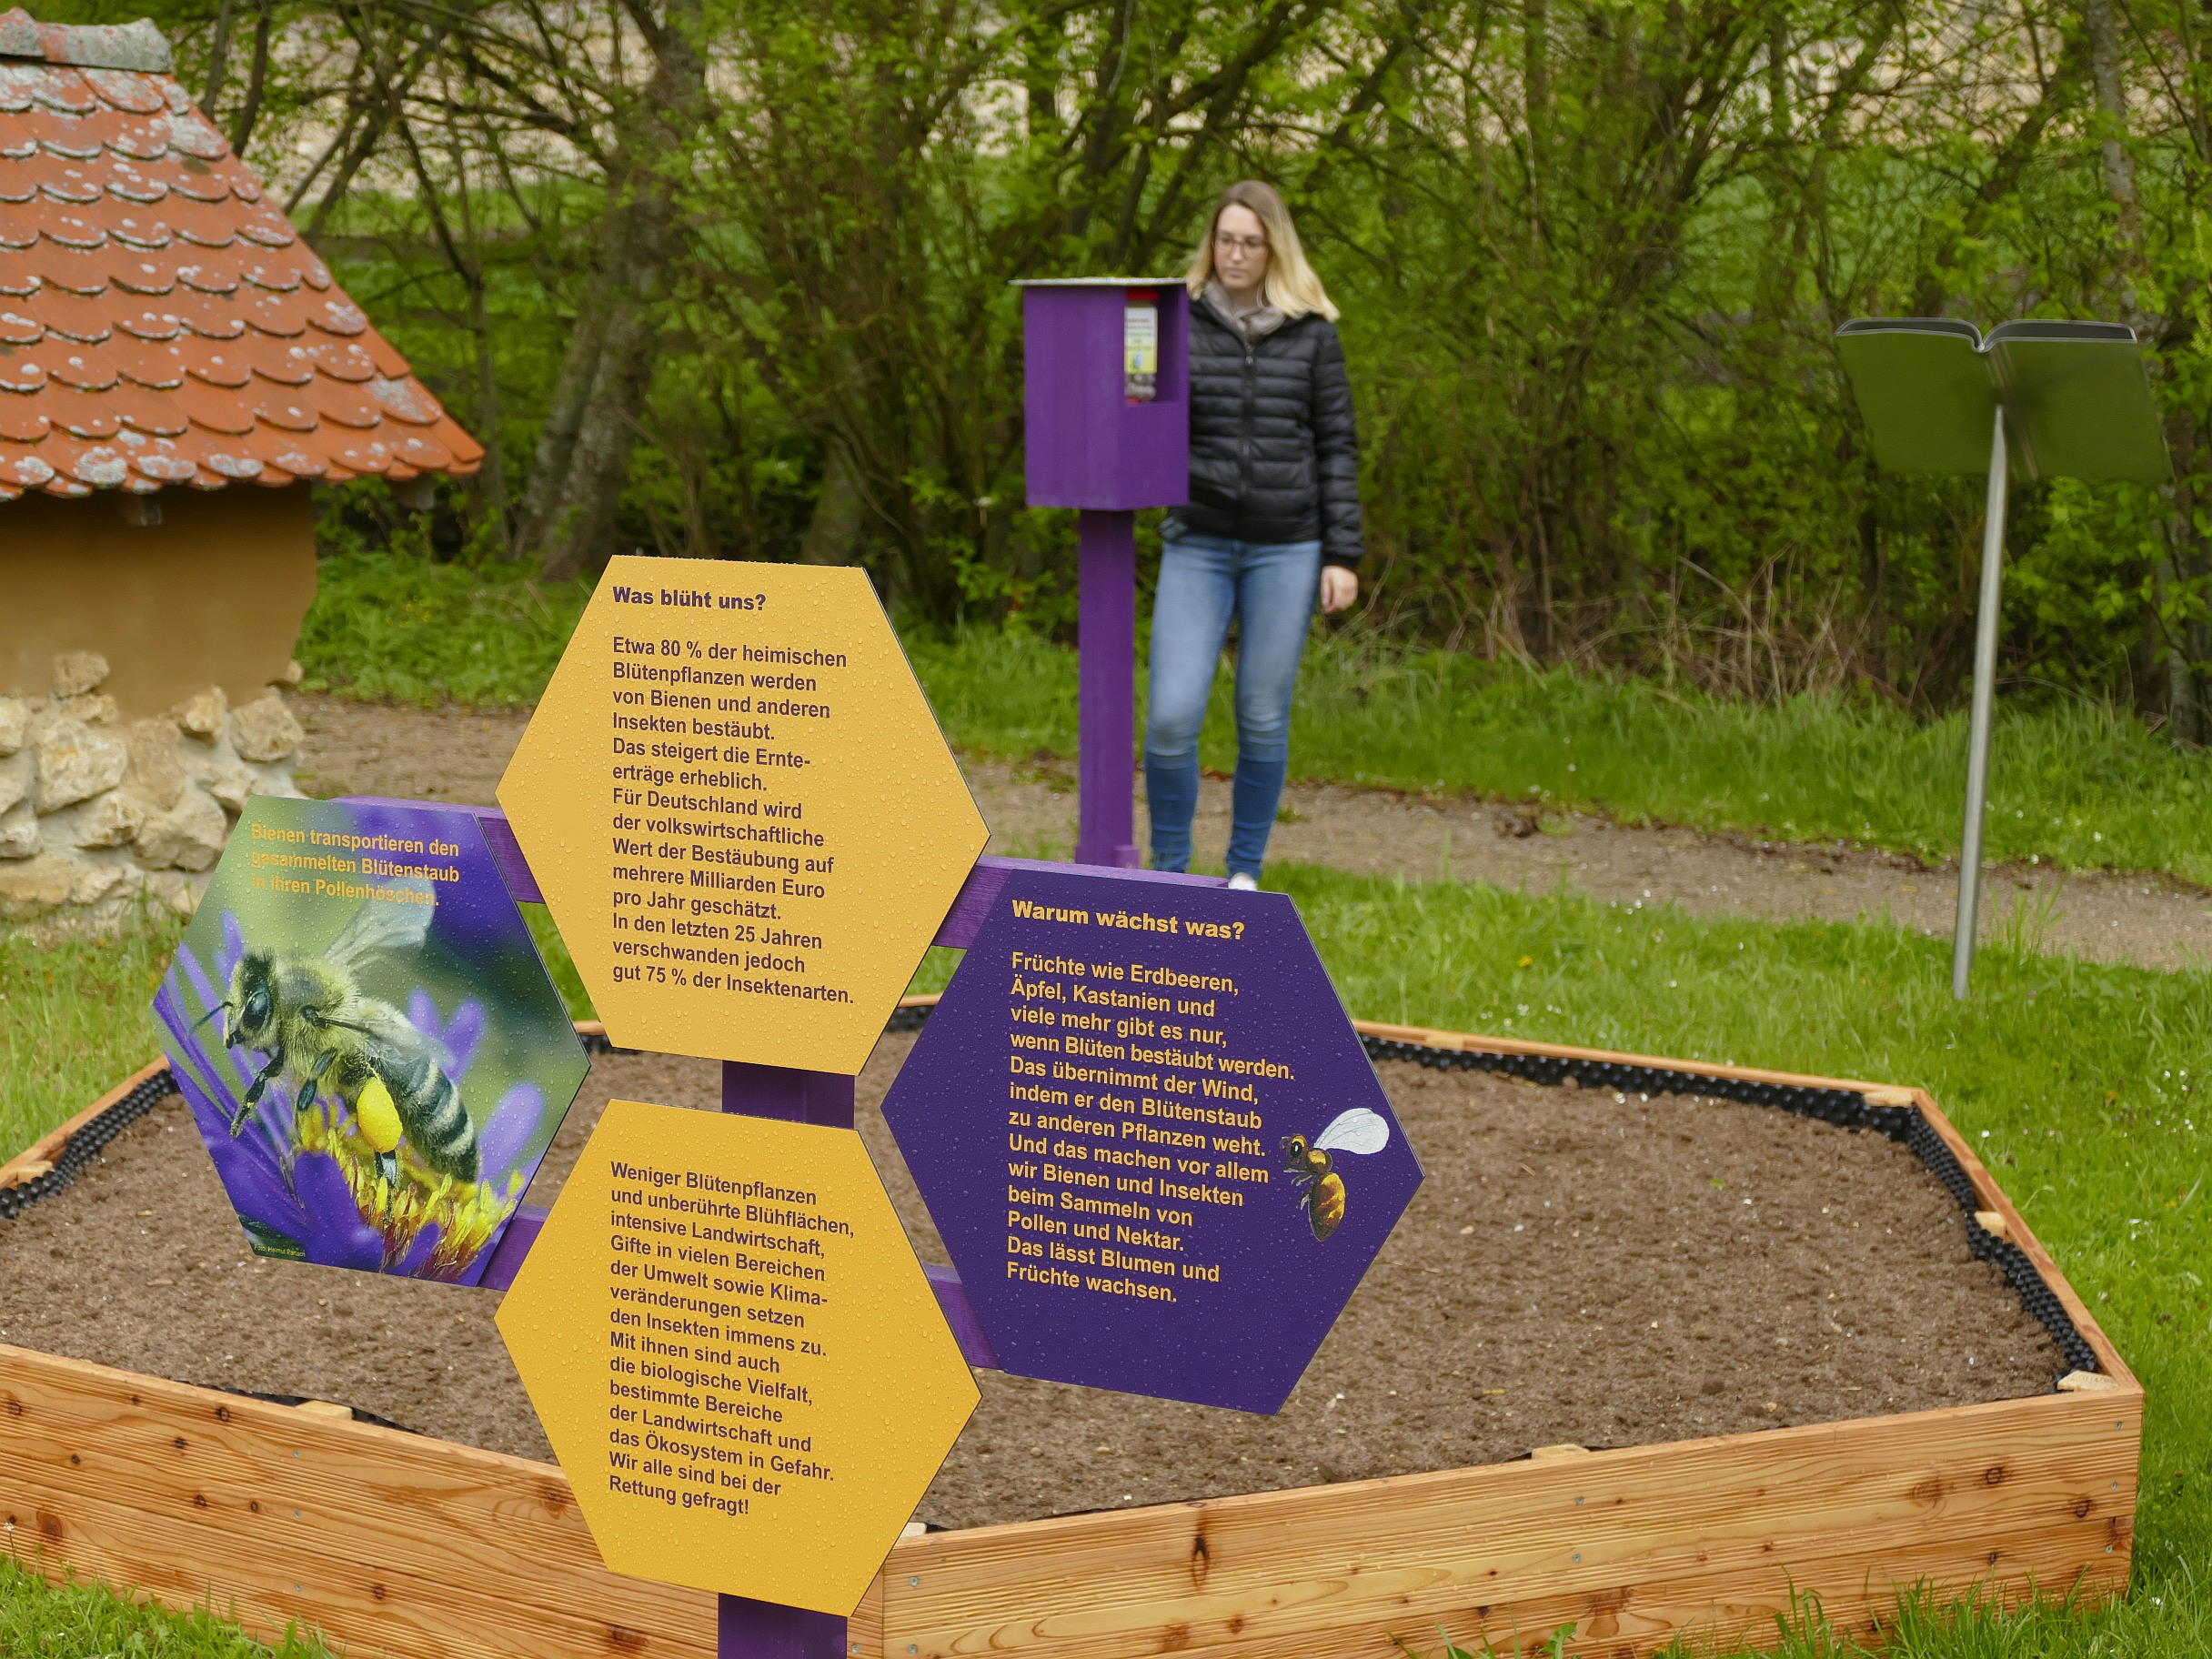 Bienen-Garten eröffnet - Museum KulturLand Ries lockt mit Outdoor-Ausstellung